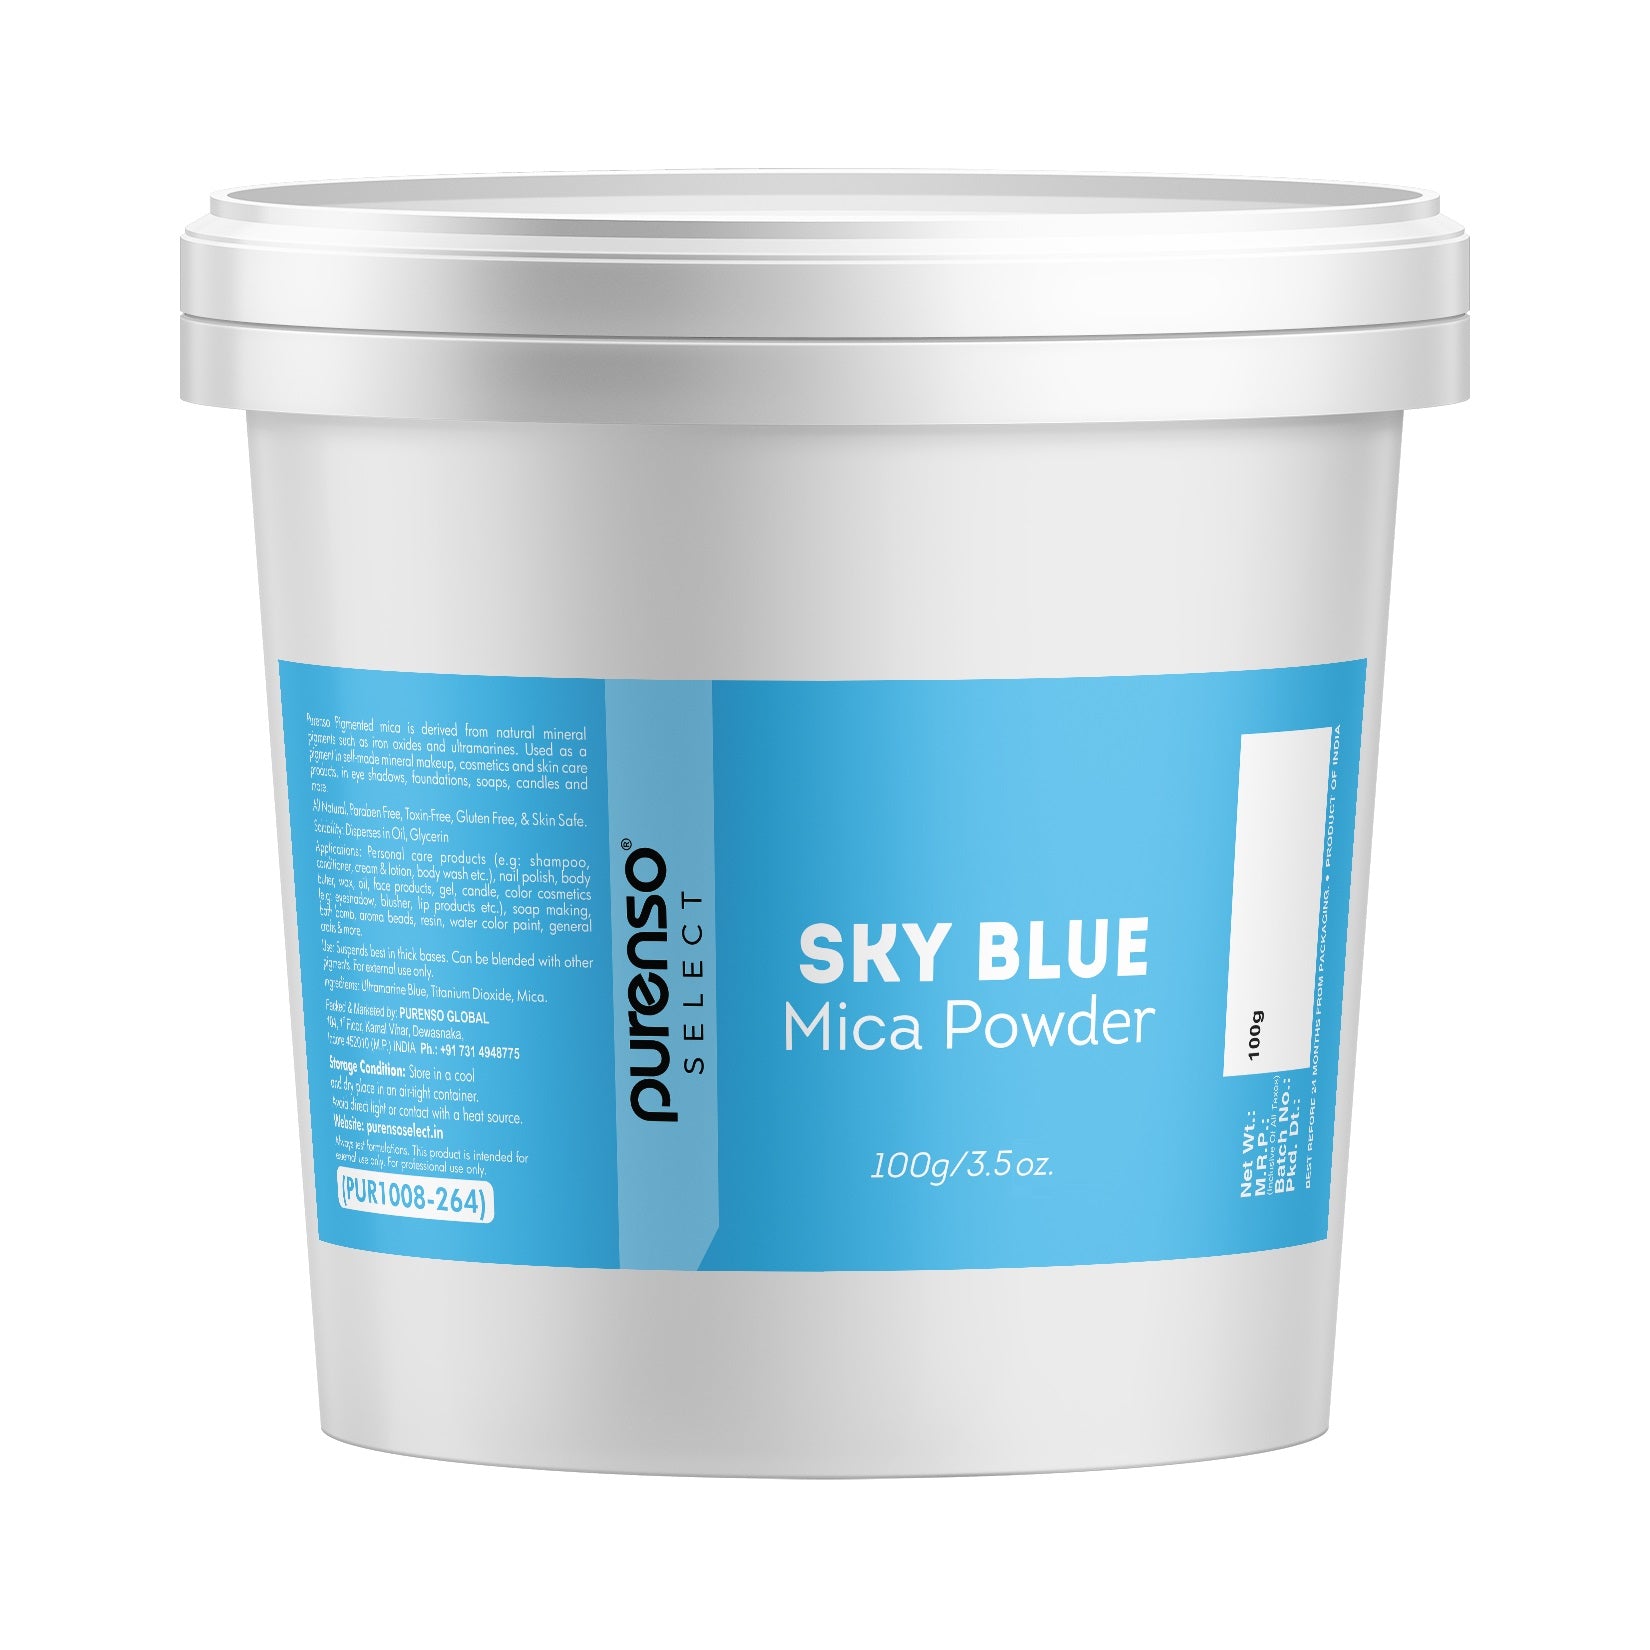 Sky Blue Mica Powder